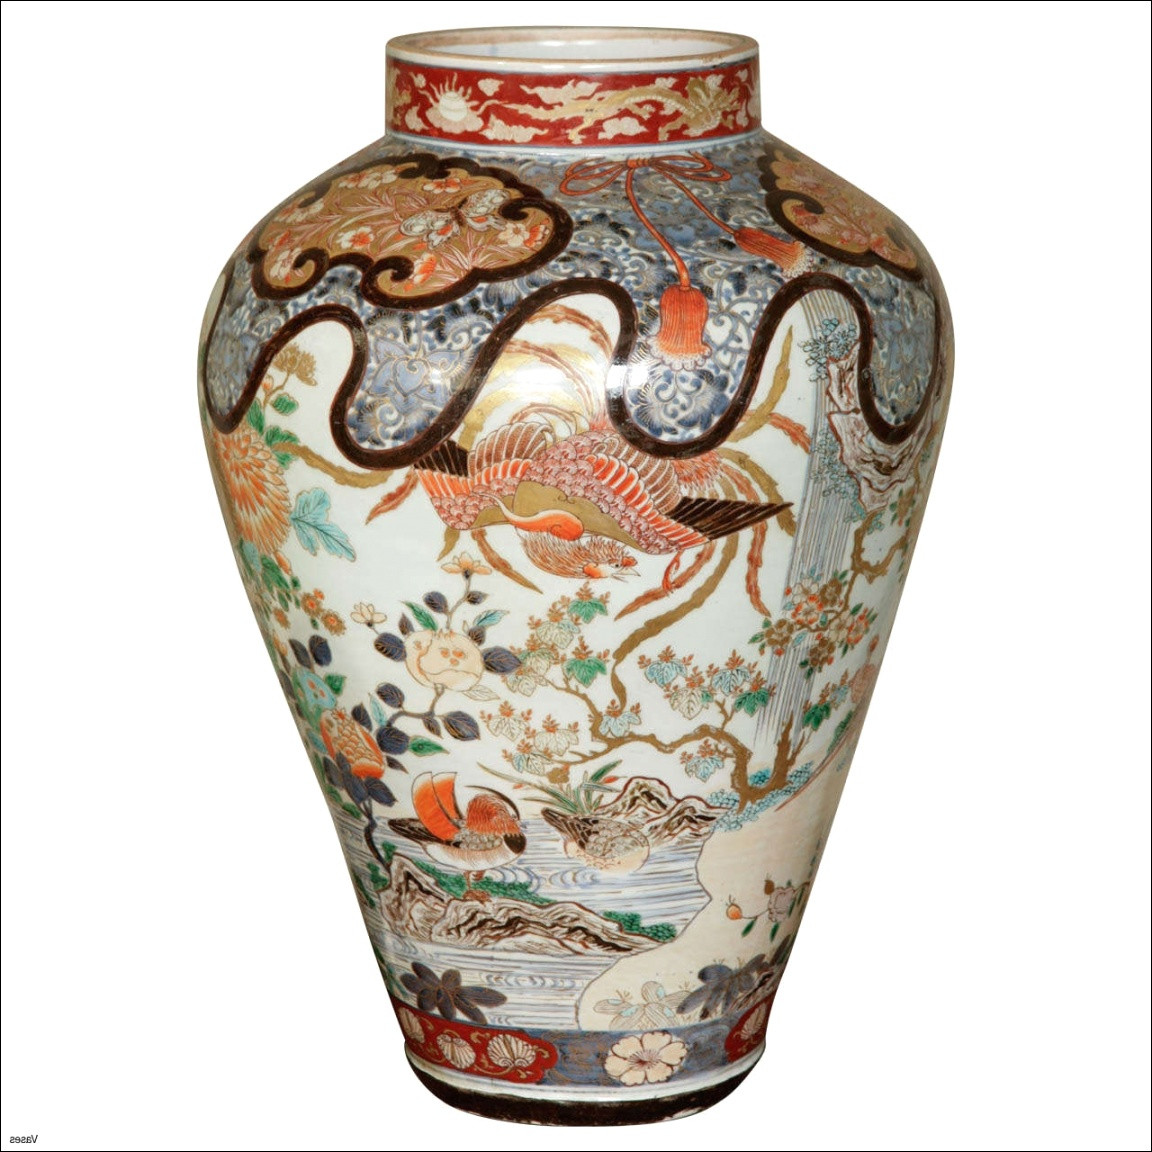 30 Fantastic Vintage Floral Vase 2024 free download vintage floral vase of japanese ceramic decoration pics japan world web senryaku info pertaining to 1385 1lh vases imari porcelain vase japanese antique fluted vasei 0d